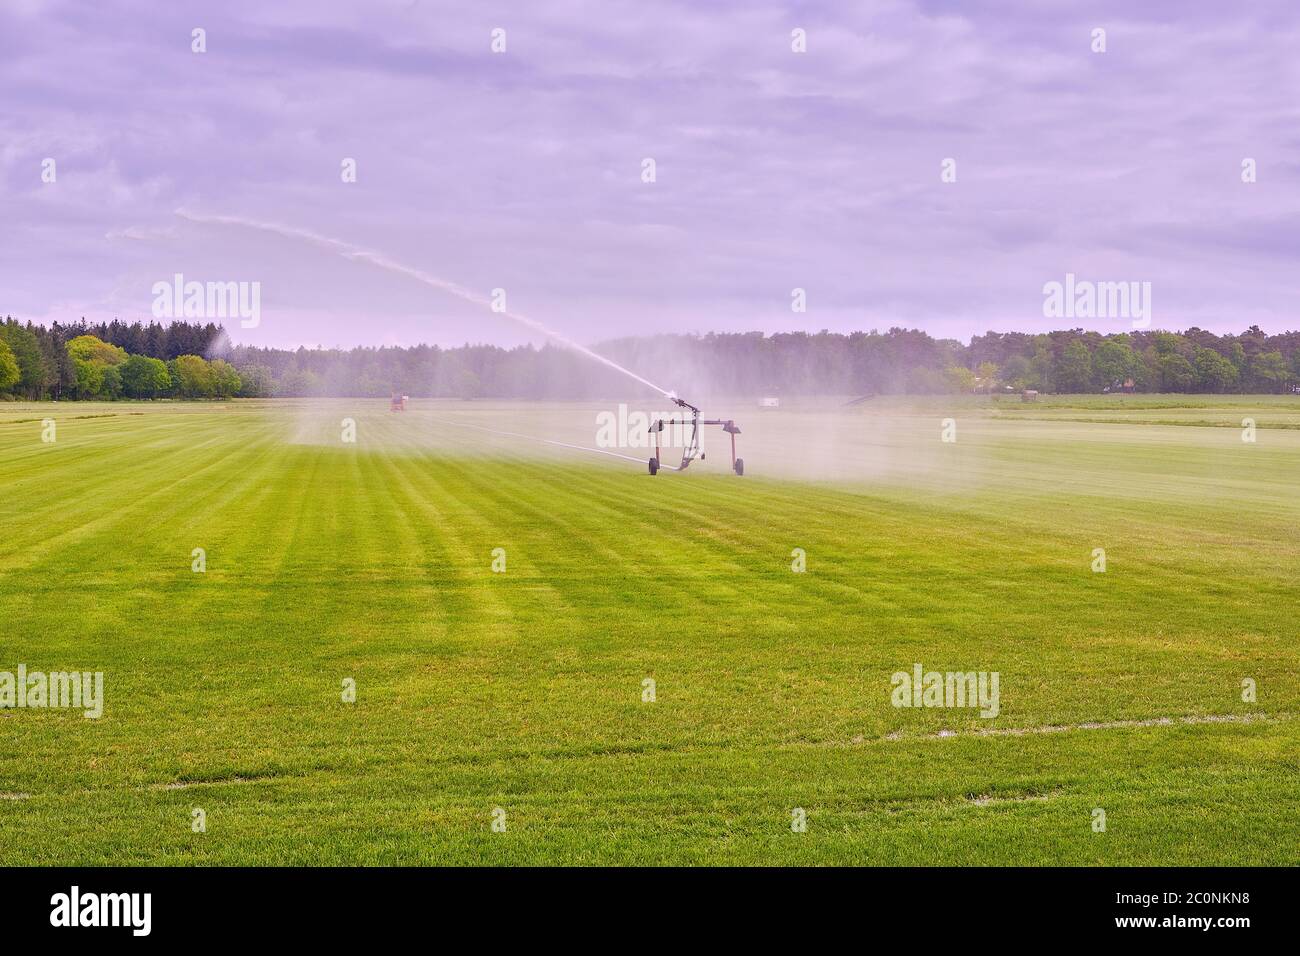 Gli agricoltori irrigano i campi a causa della siccità, i raccolti in attesa della pioggia a venire. Drenthe, Paesi Bassi. Foto Stock